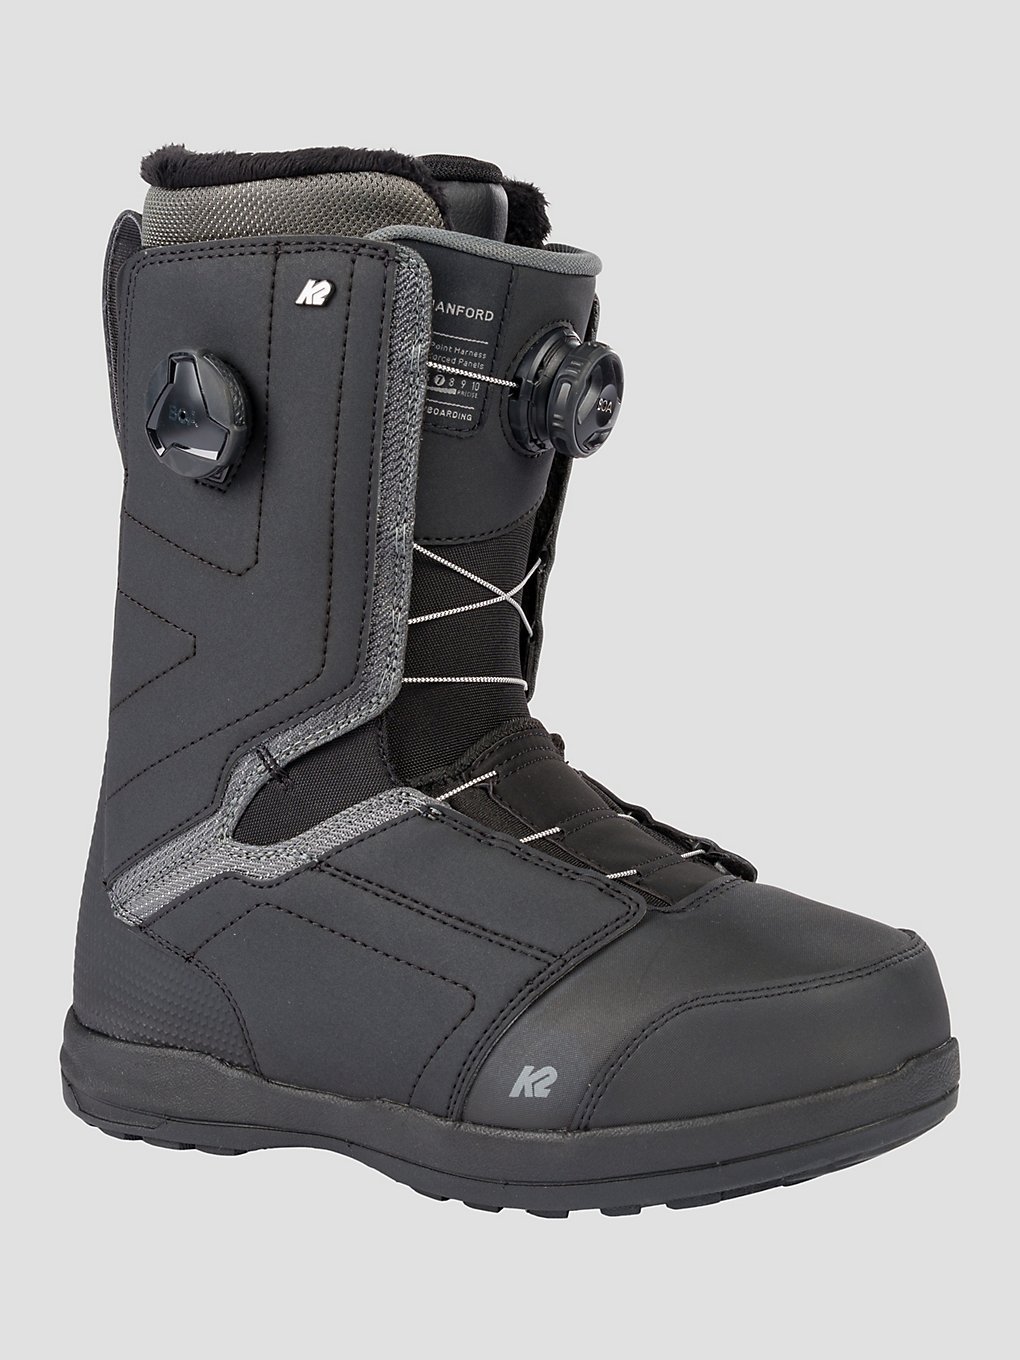 K2 Hanford 2023 Snowboard schoenen zwart